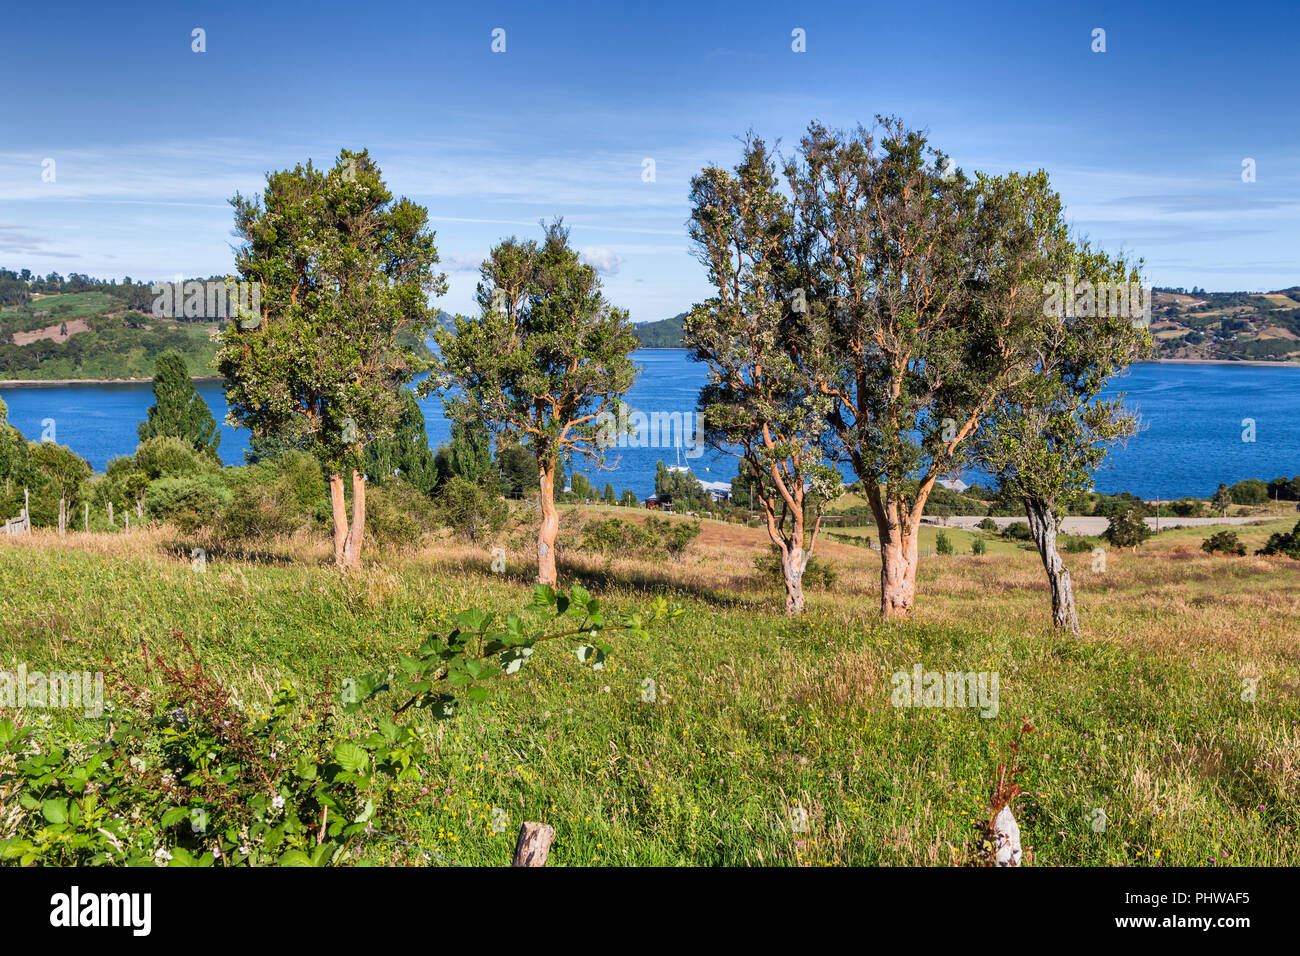 Sea of Chiloe coast, Quinchao, Chiloe island, Los Lagos region, Chile Stock Photo